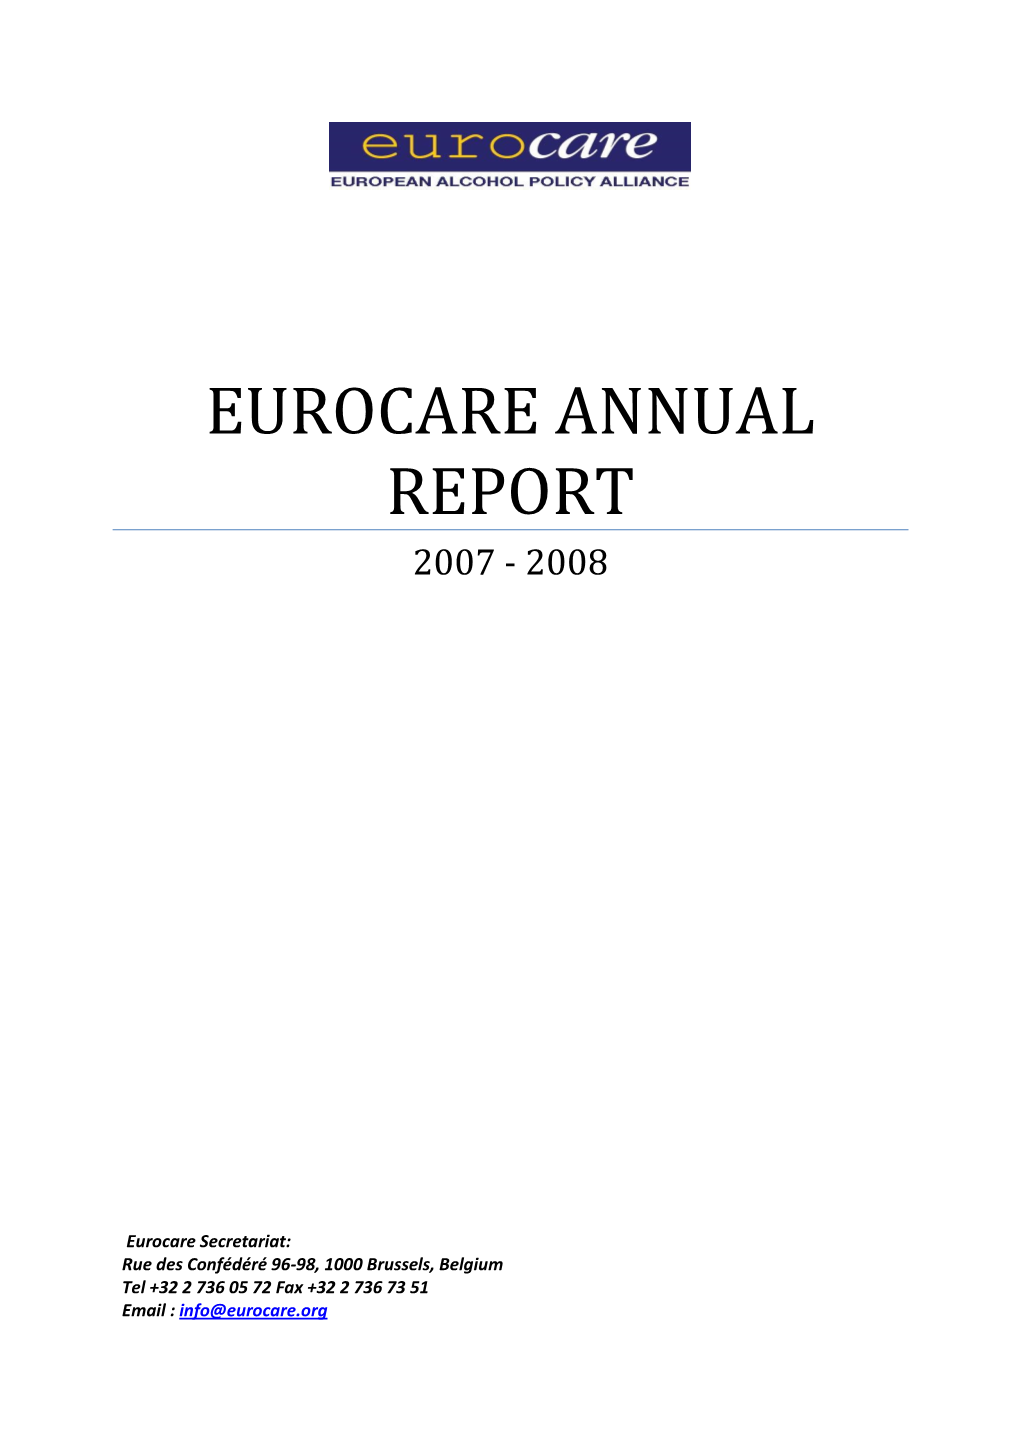 2007-2008 Eurocare Annual Report (PDF 842